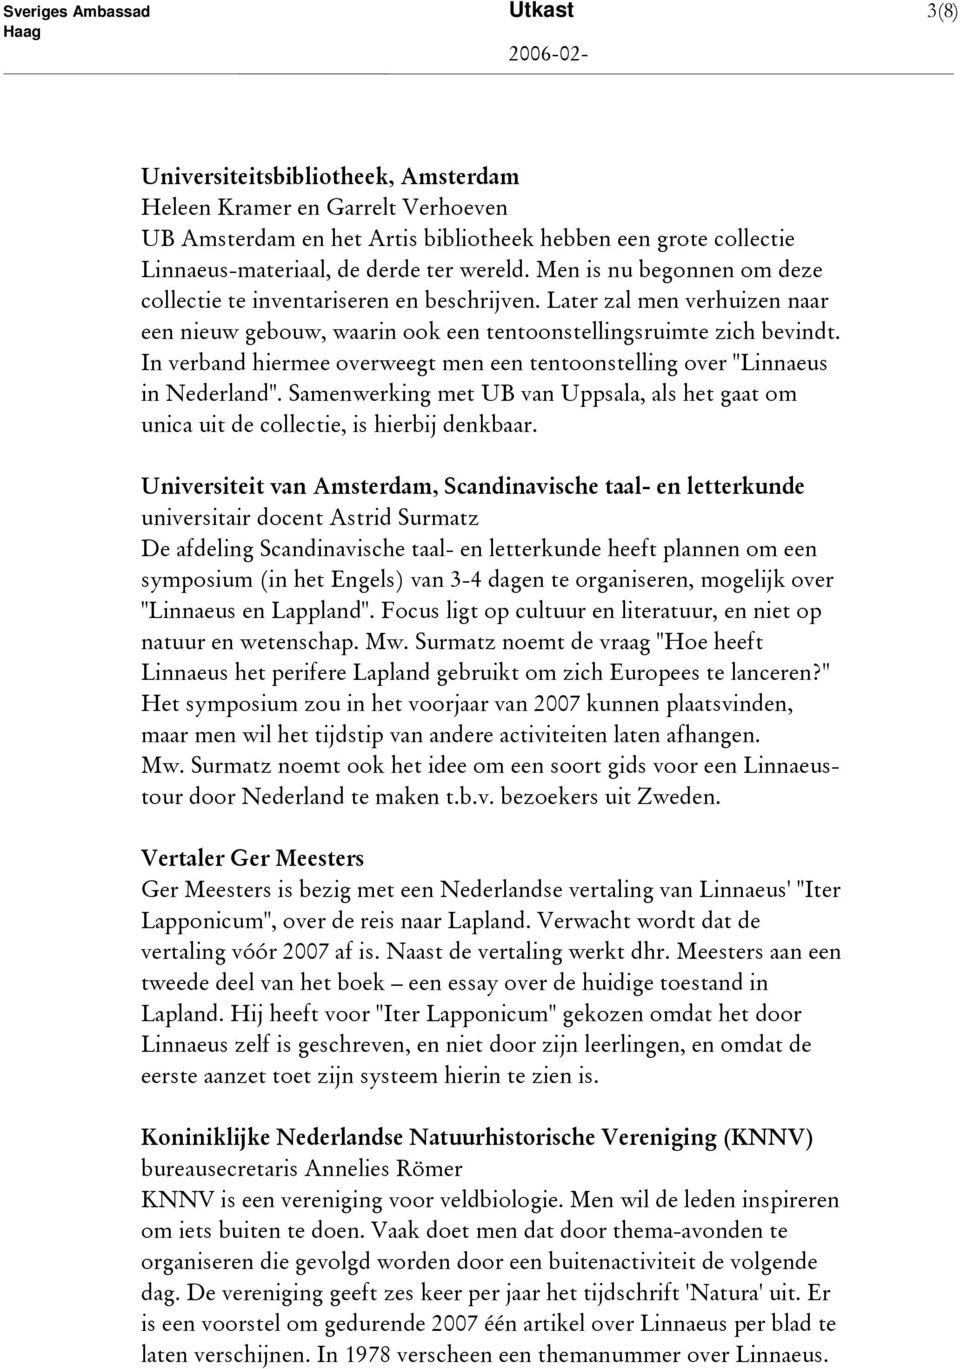 In verband hiermee overweegt men een tentoonstelling over "Linnaeus in Nederland". Samenwerking met UB van Uppsala, als het gaat om unica uit de collectie, is hierbij denkbaar.